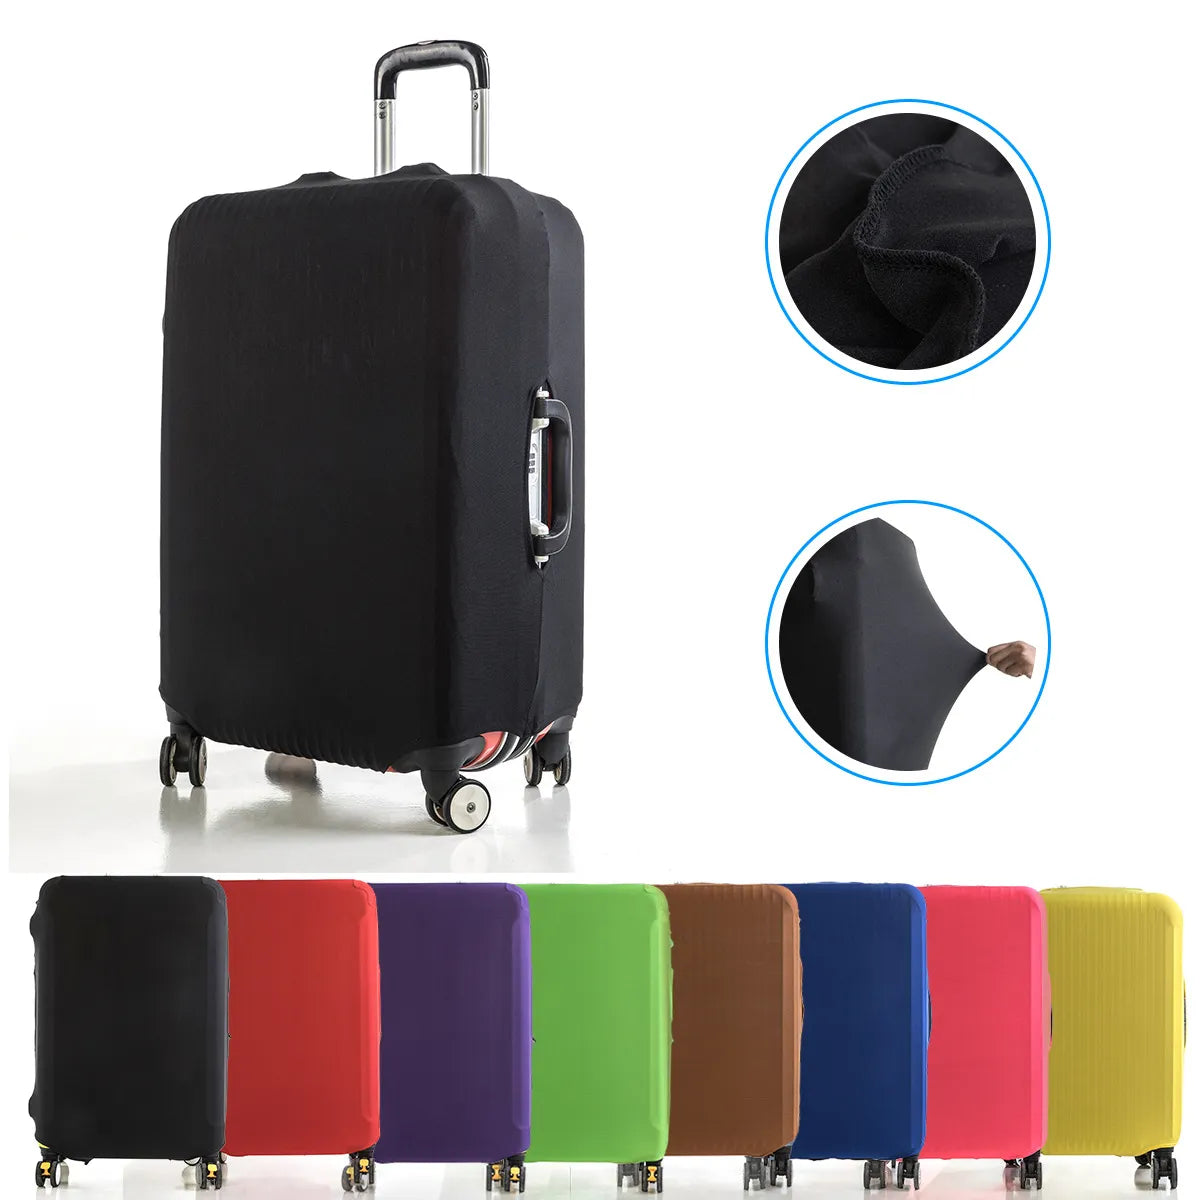 Housse de bagage en tissu extensible, protection de valise, housse anti-poussière, adaptée aux valises de 18 à 32 pouces